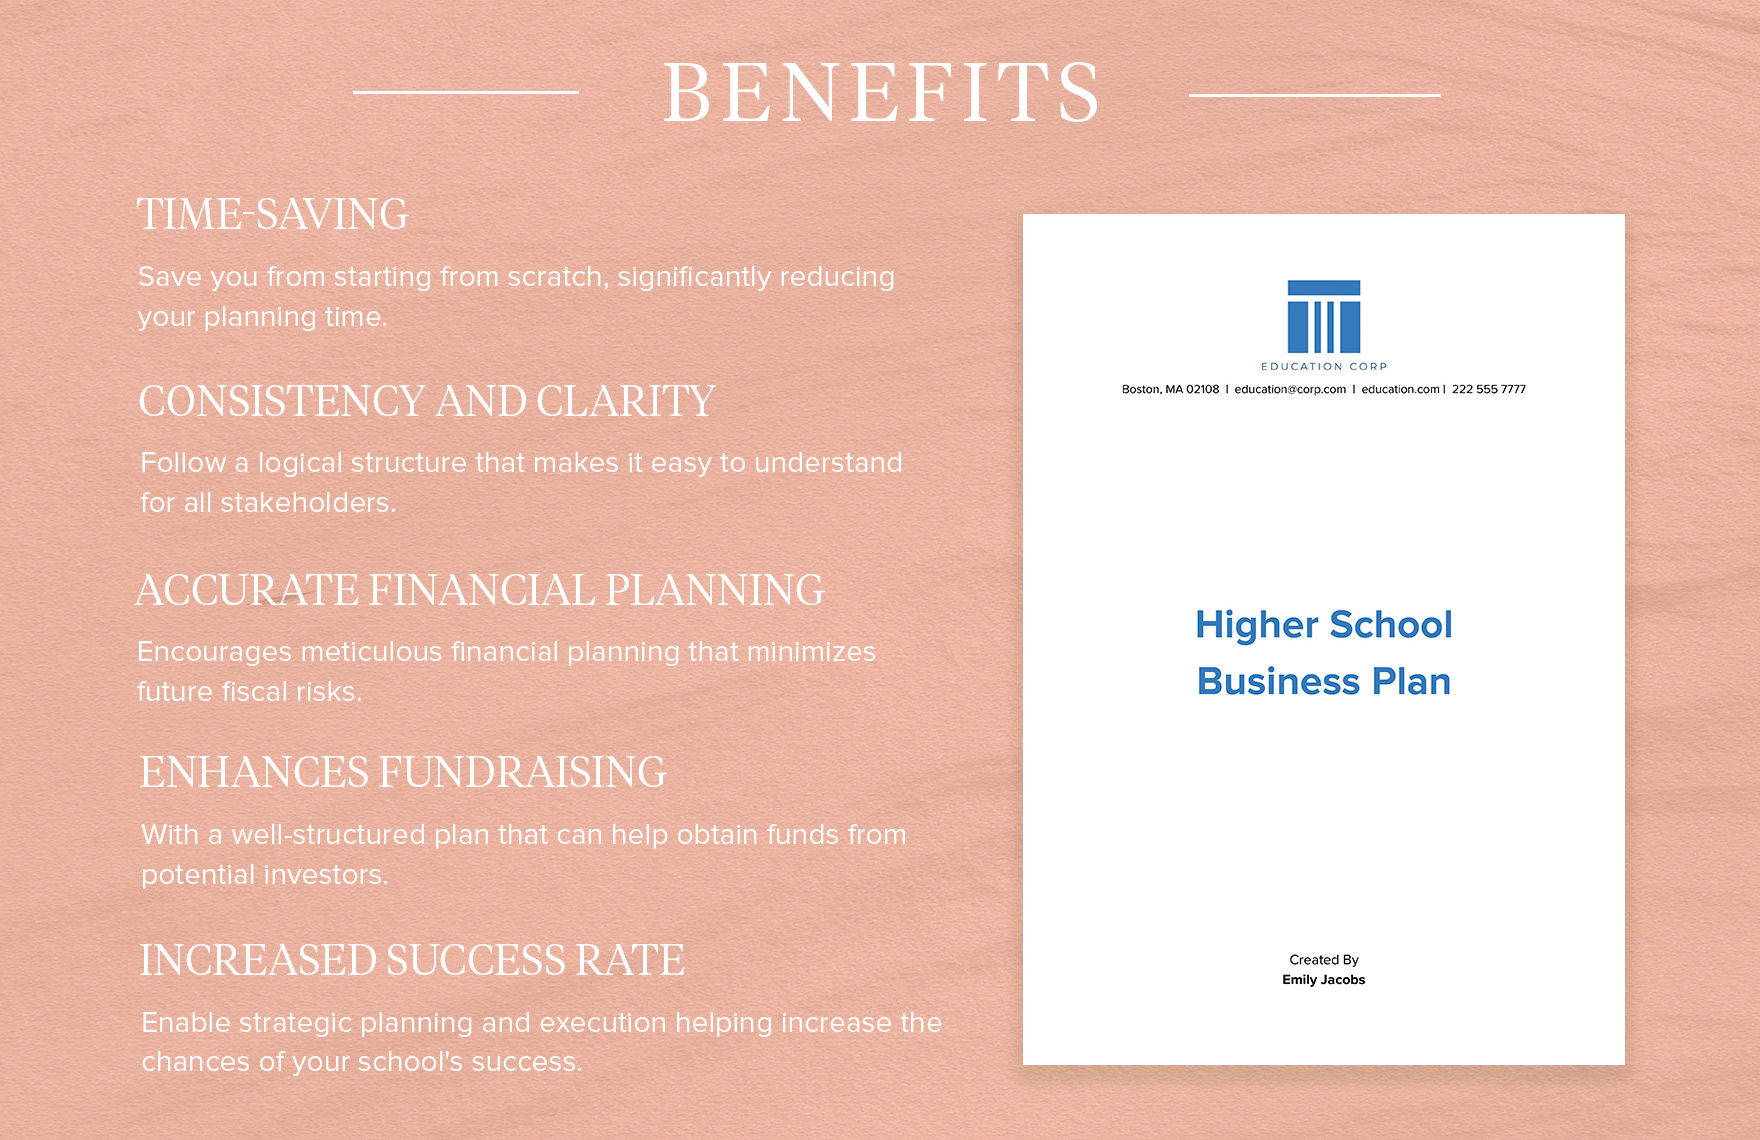 Higher School Business Plan Template